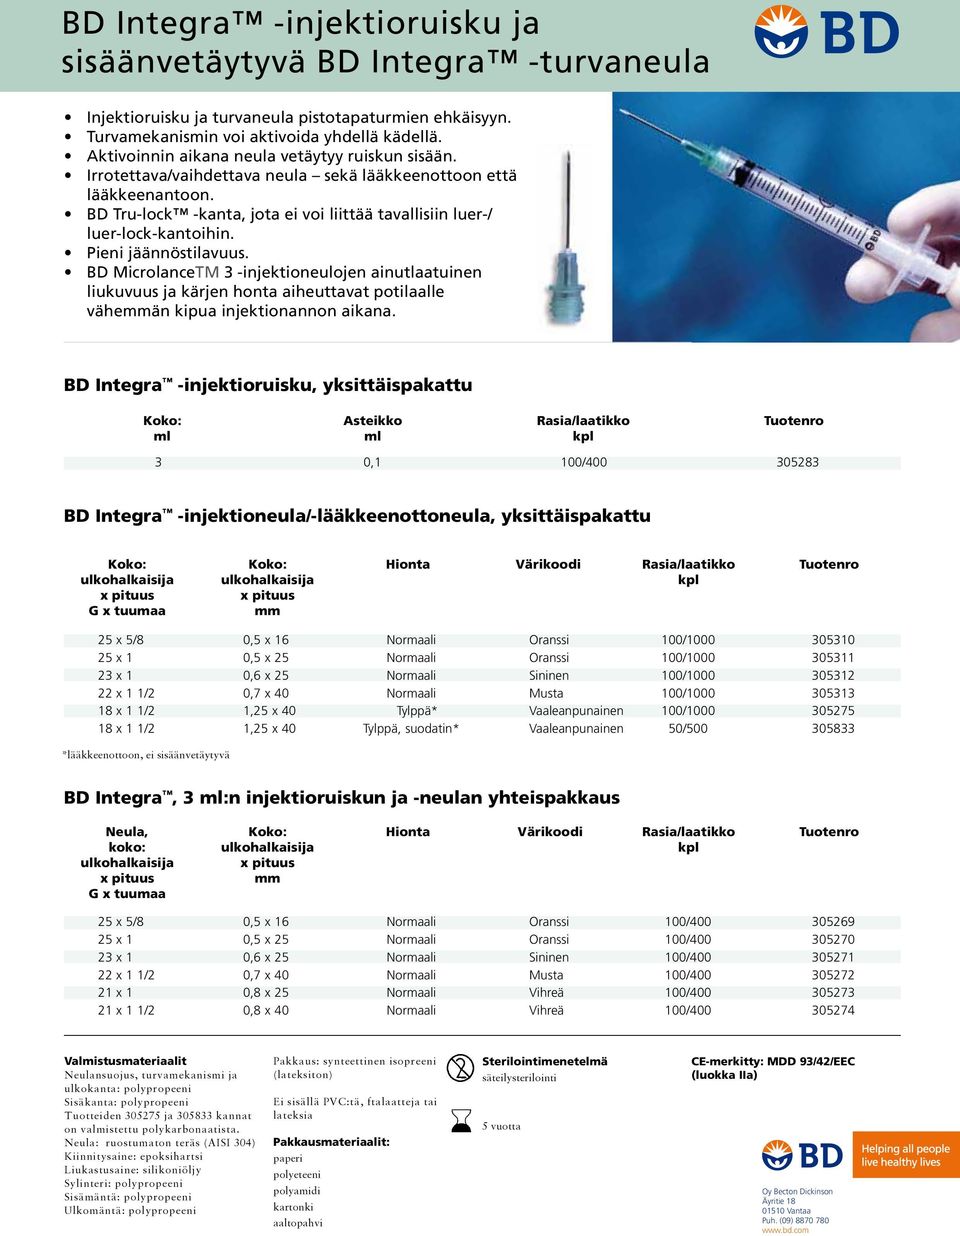 Pieni jäännöstilavuus. BD MicrolanceTM 3 -injektioneulojen ainutlaatuinen liukuvuus ja kärjen honta aiheuttavat potilaalle väheän kipua injektionannon aikana.